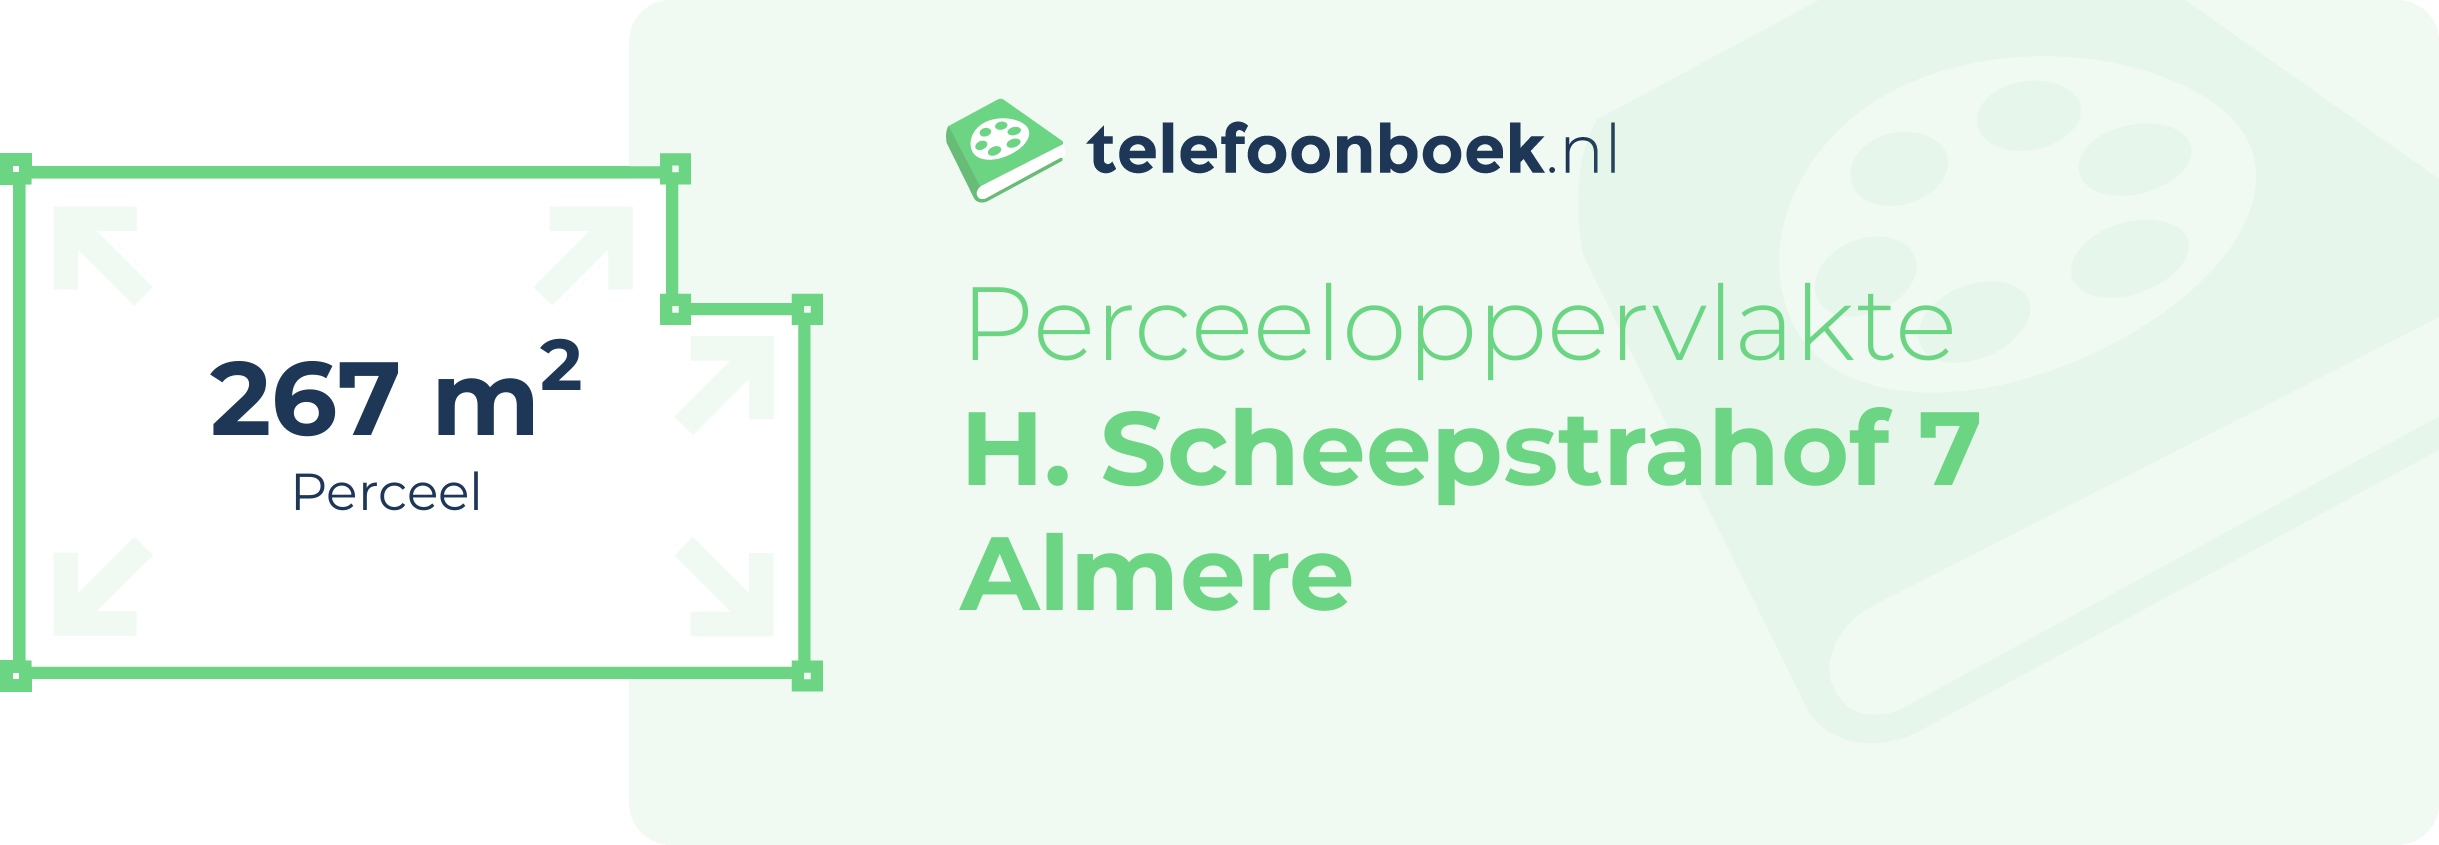 Perceeloppervlakte H. Scheepstrahof 7 Almere